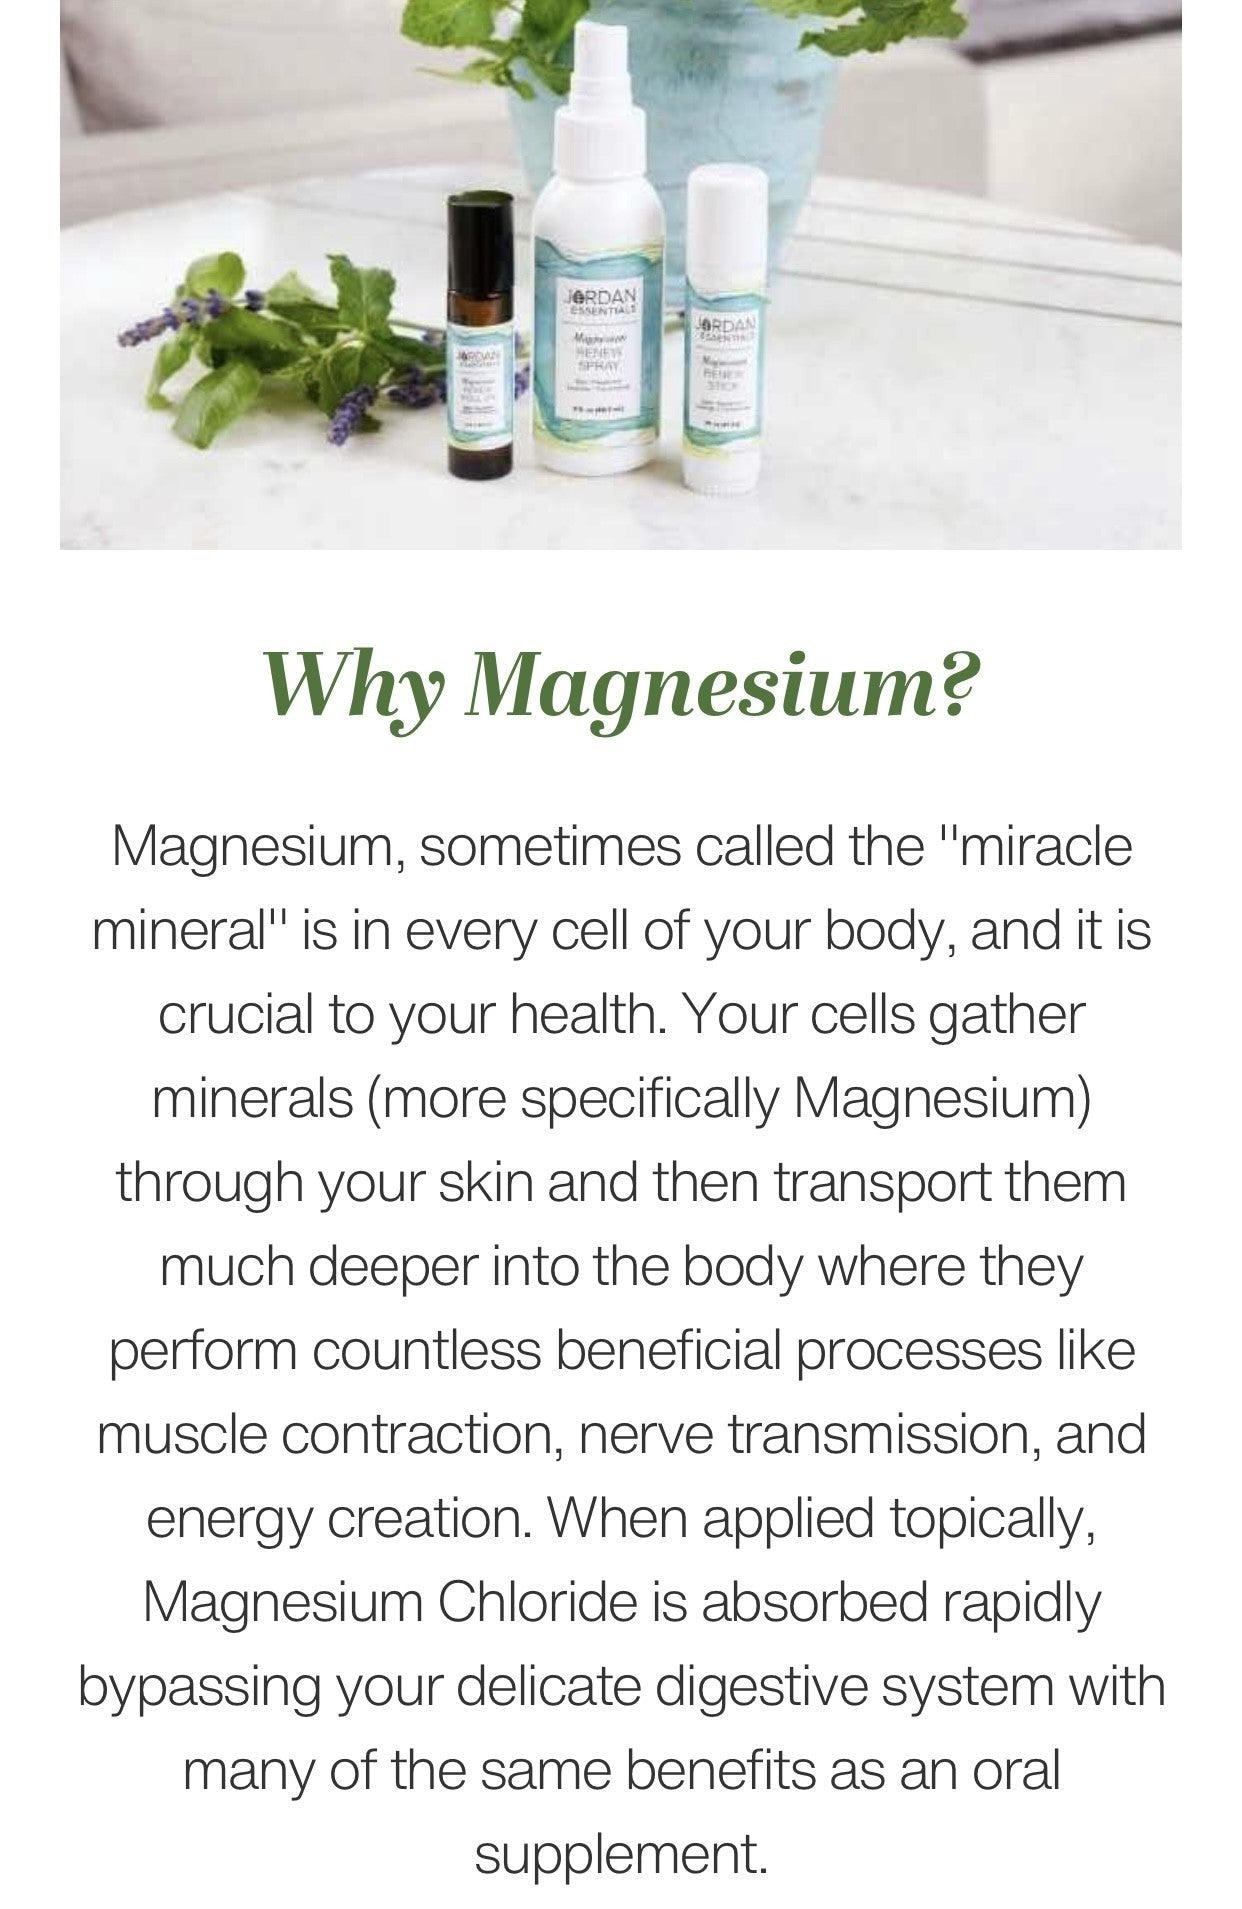 Magnesium sticks